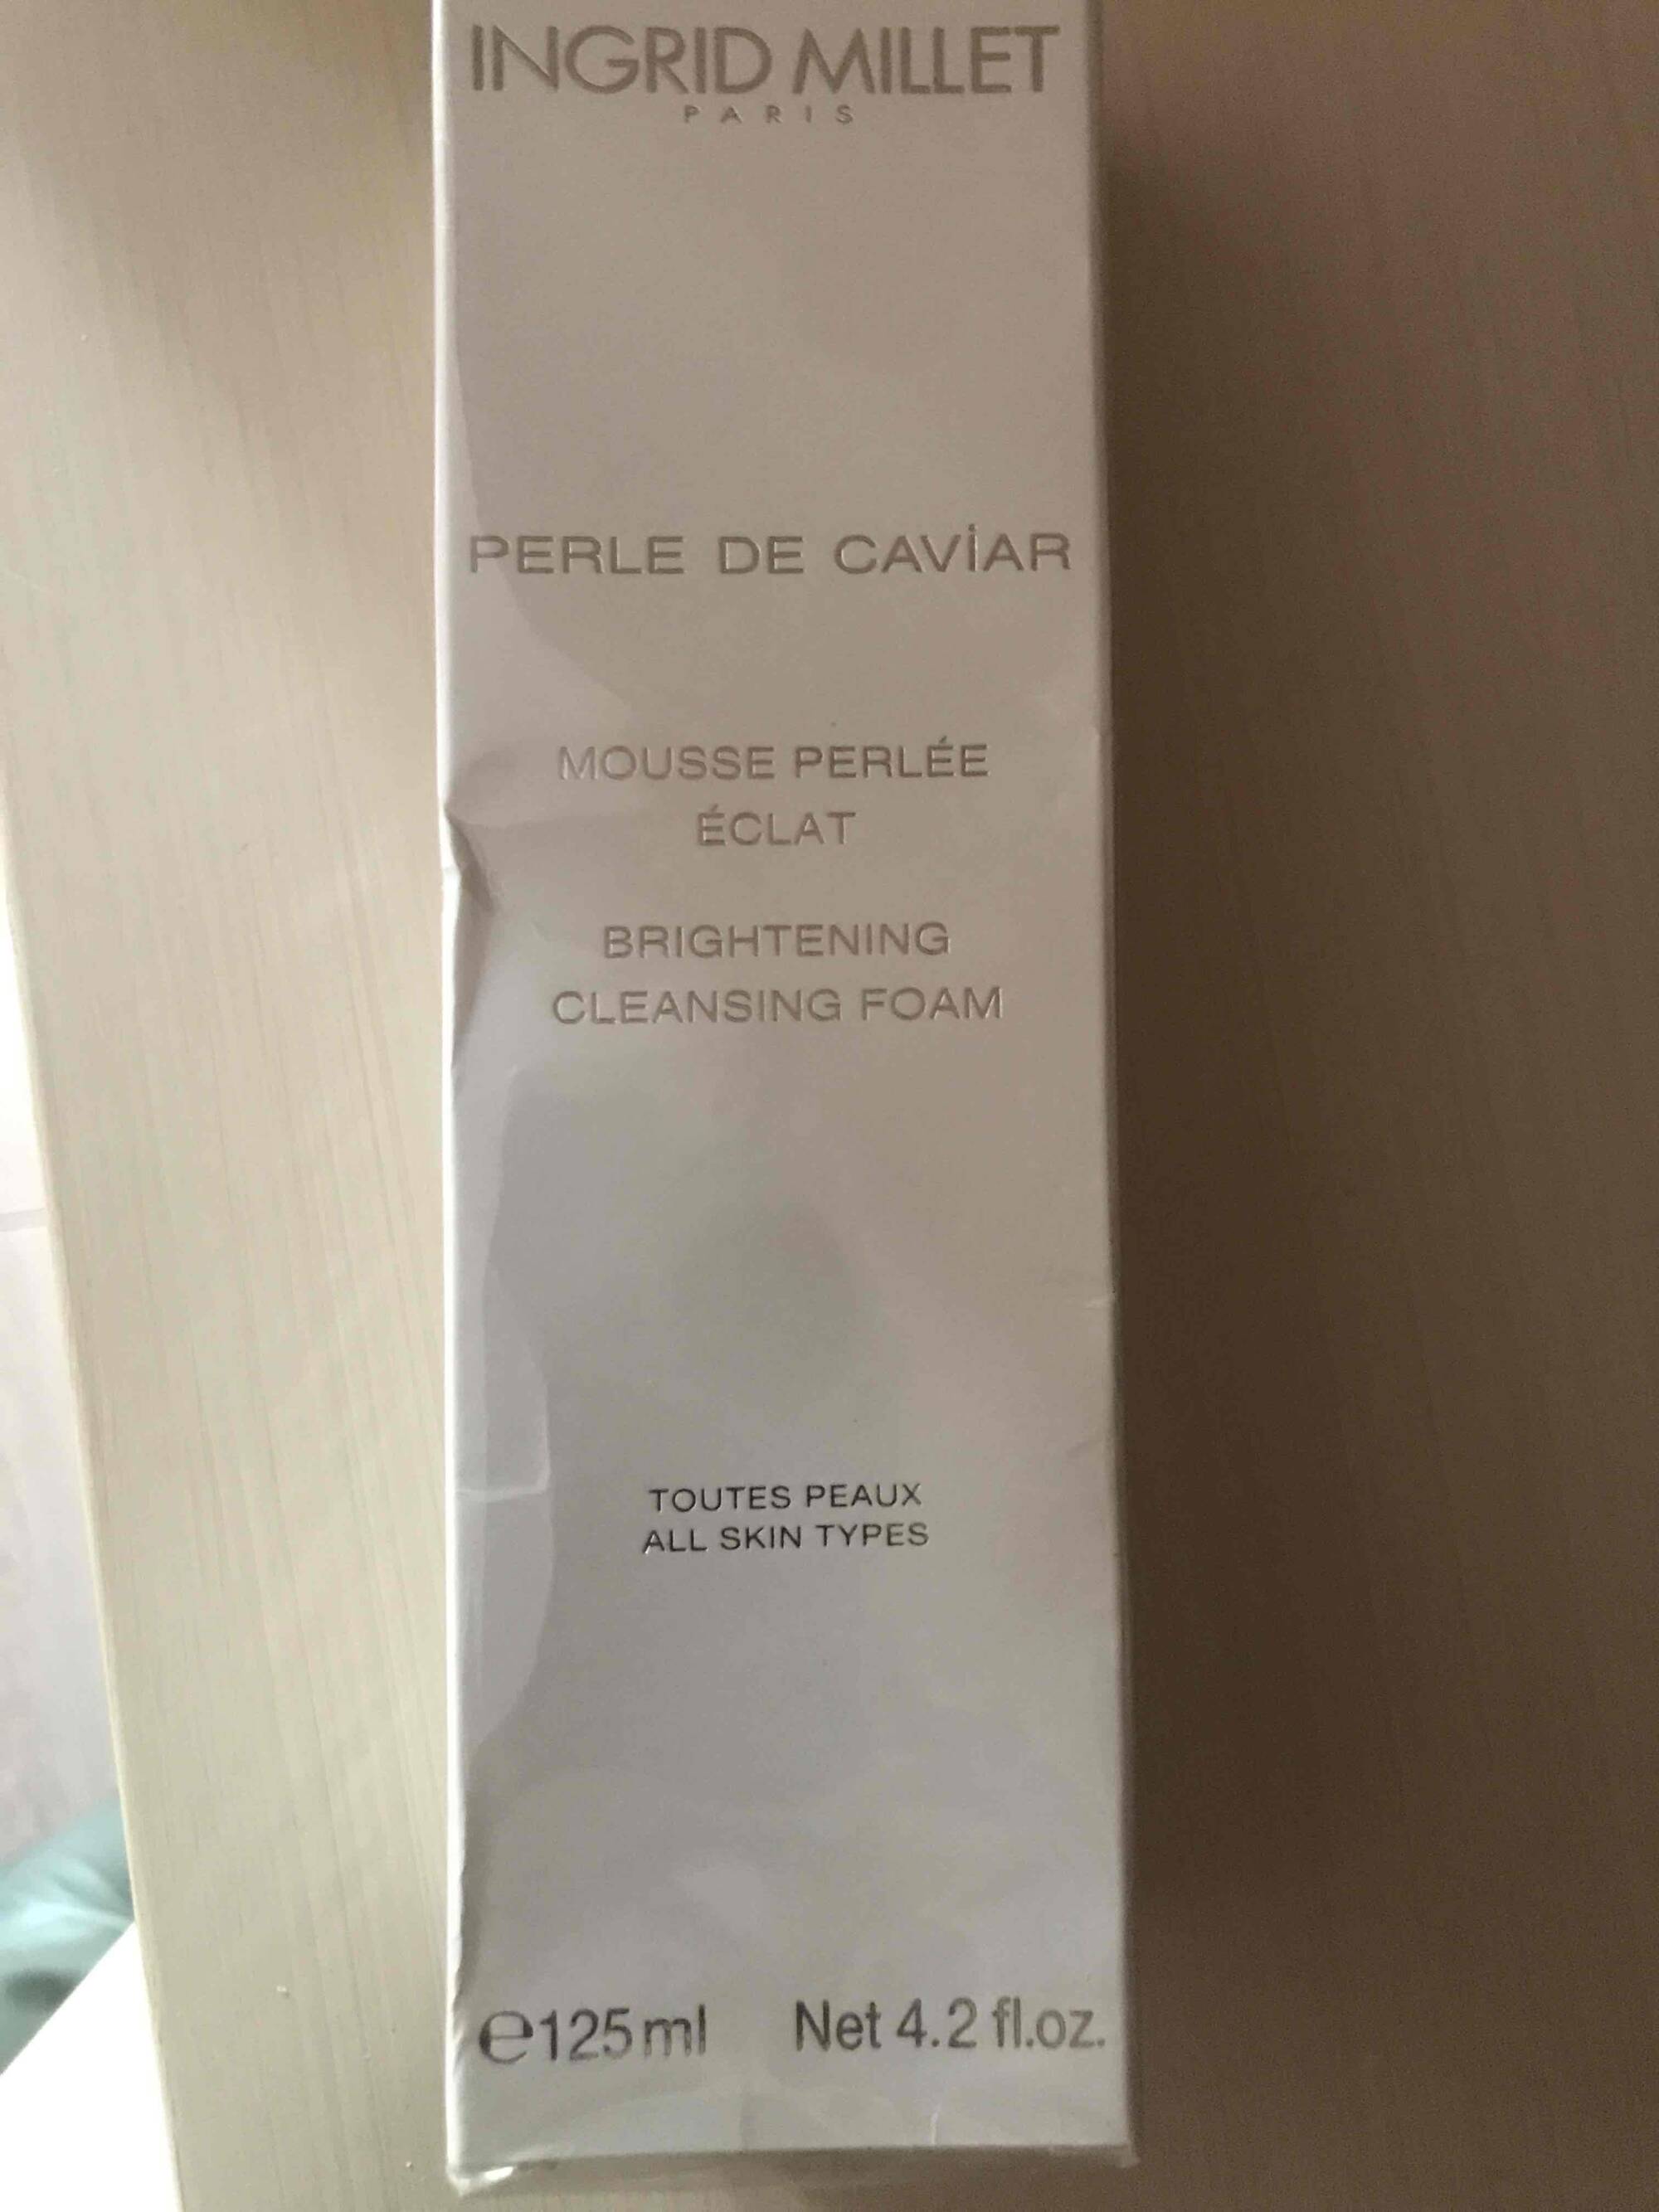 INGRID MILLET - Perle de caviar - Mousse perlée éclat